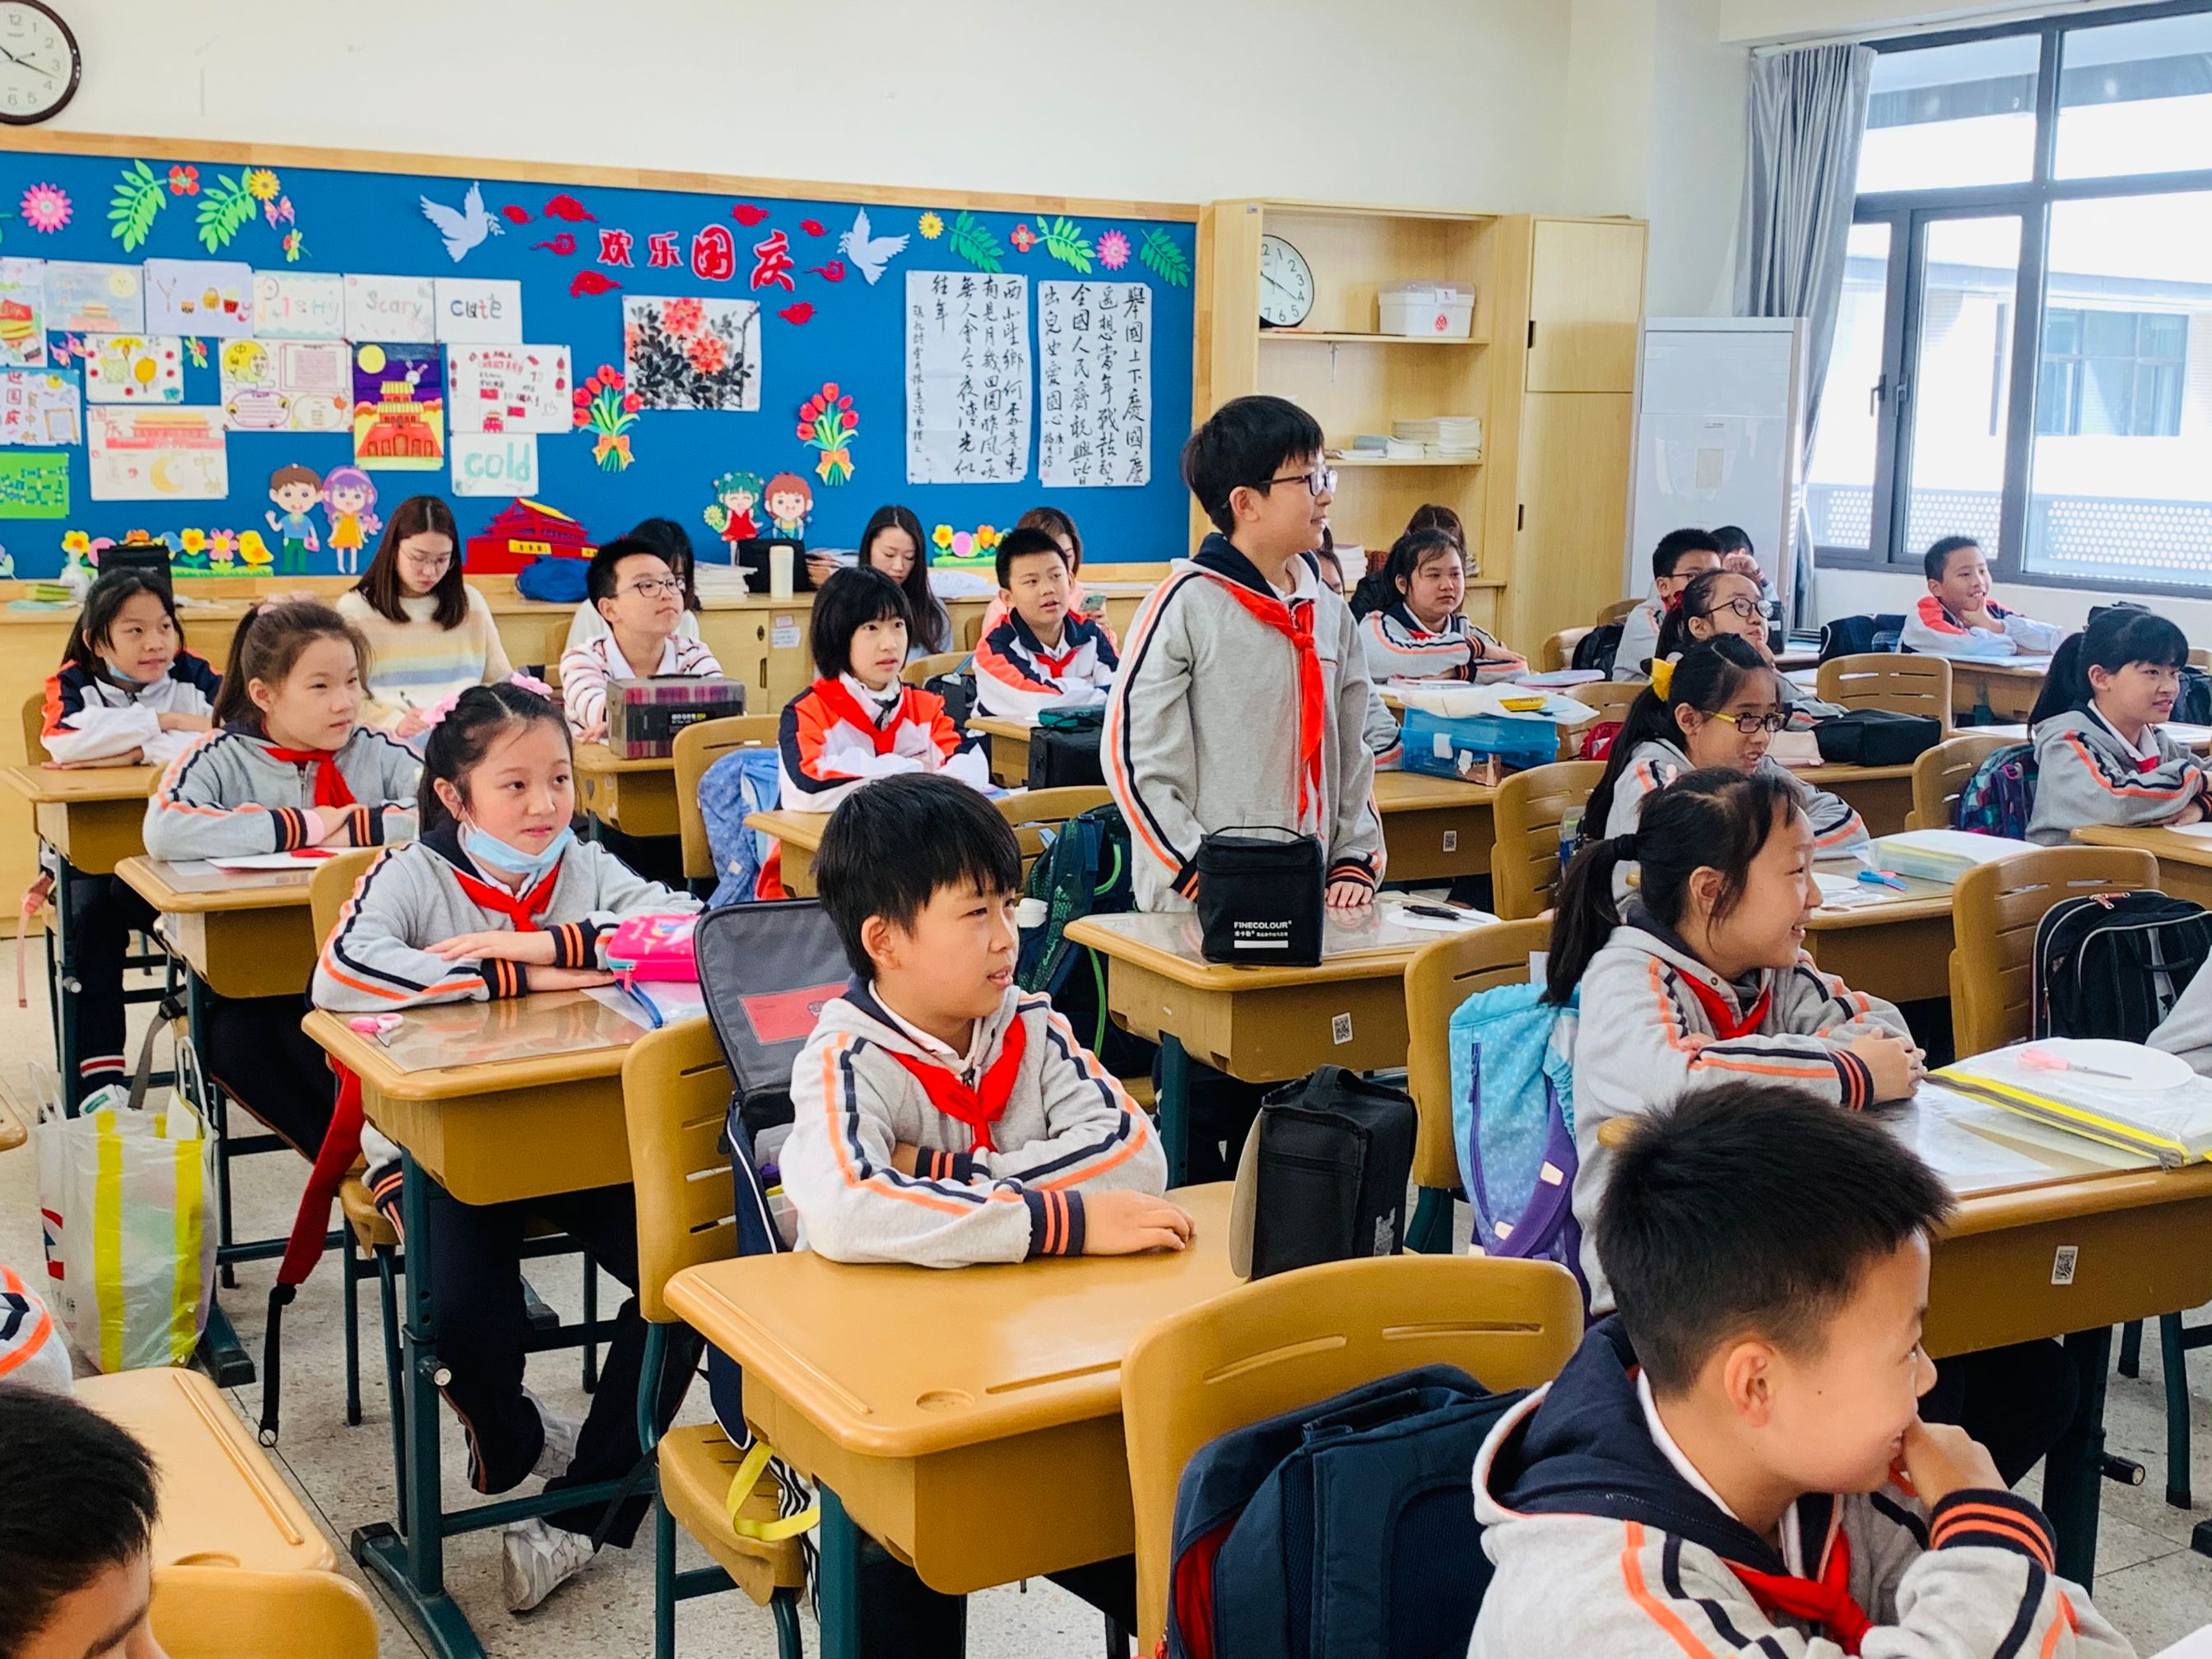 上课教室-校园风貌|北京市朝阳区北外附校双语学校